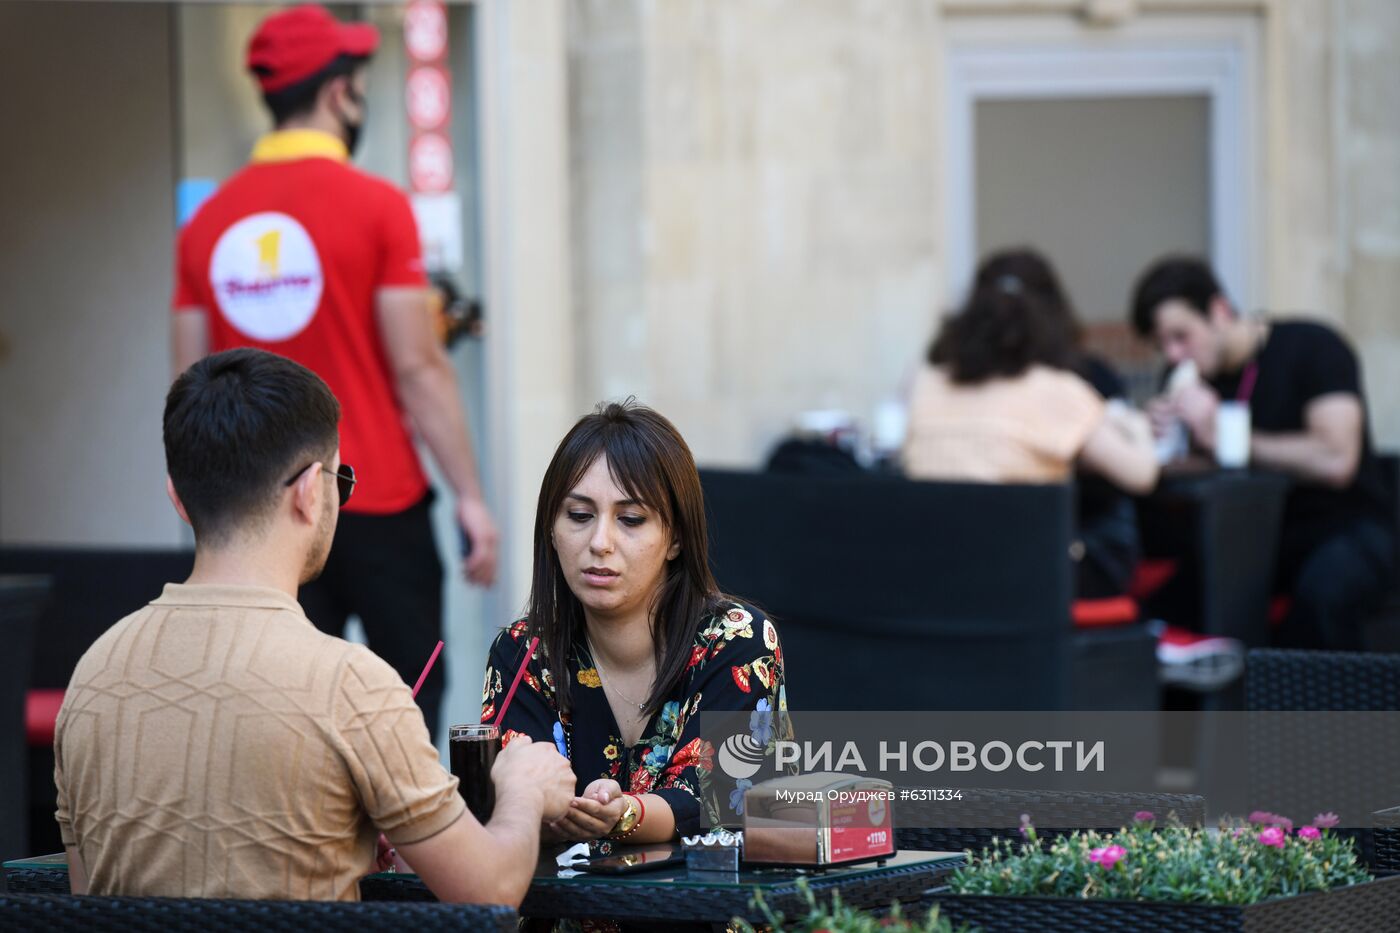 В Азербайджане возобновили работу летние веранды кафе